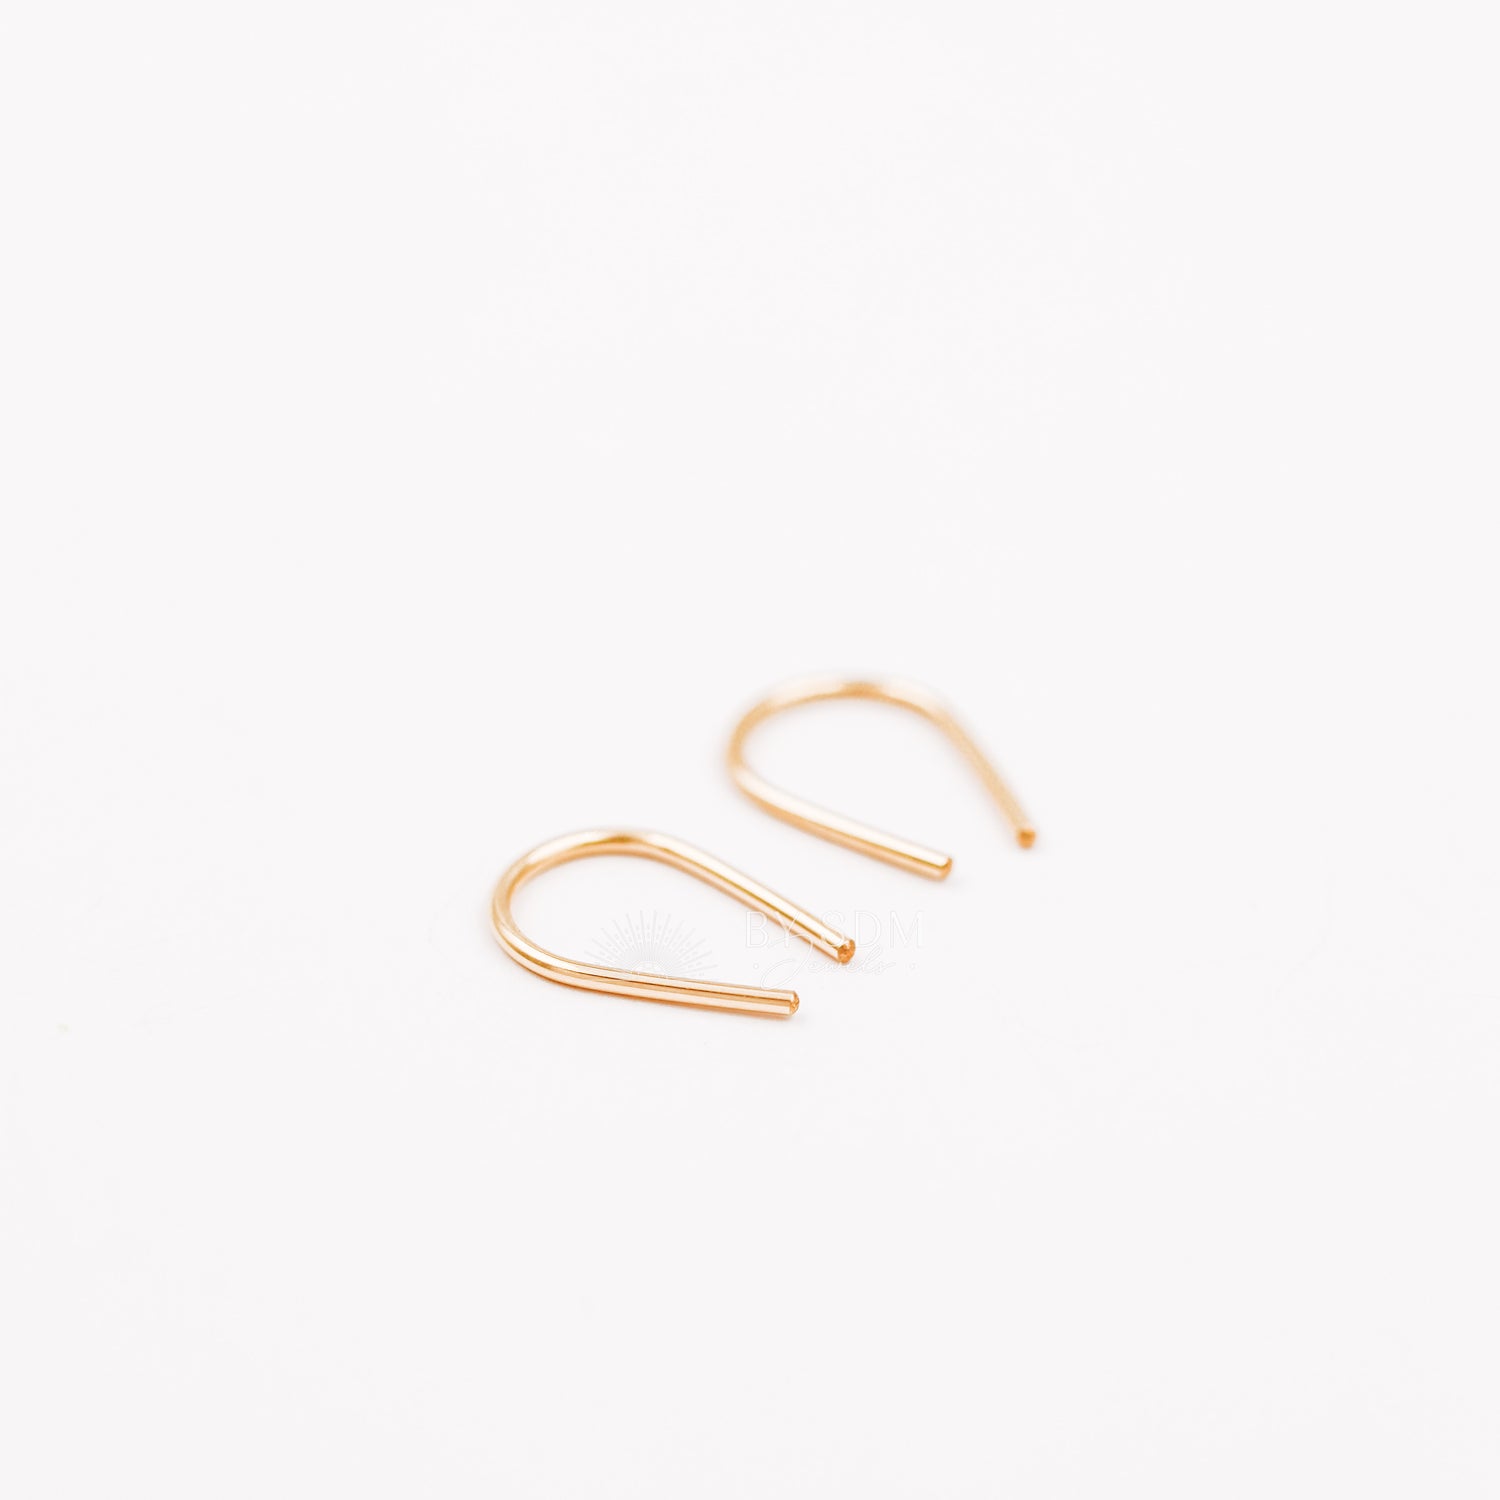 Gold Arc Earrings • Gold Filled Earrings • Gold U Earrings • Minimalist Earrings • Dainty Earrings • Open Hoop Earrings • Silver Earrings